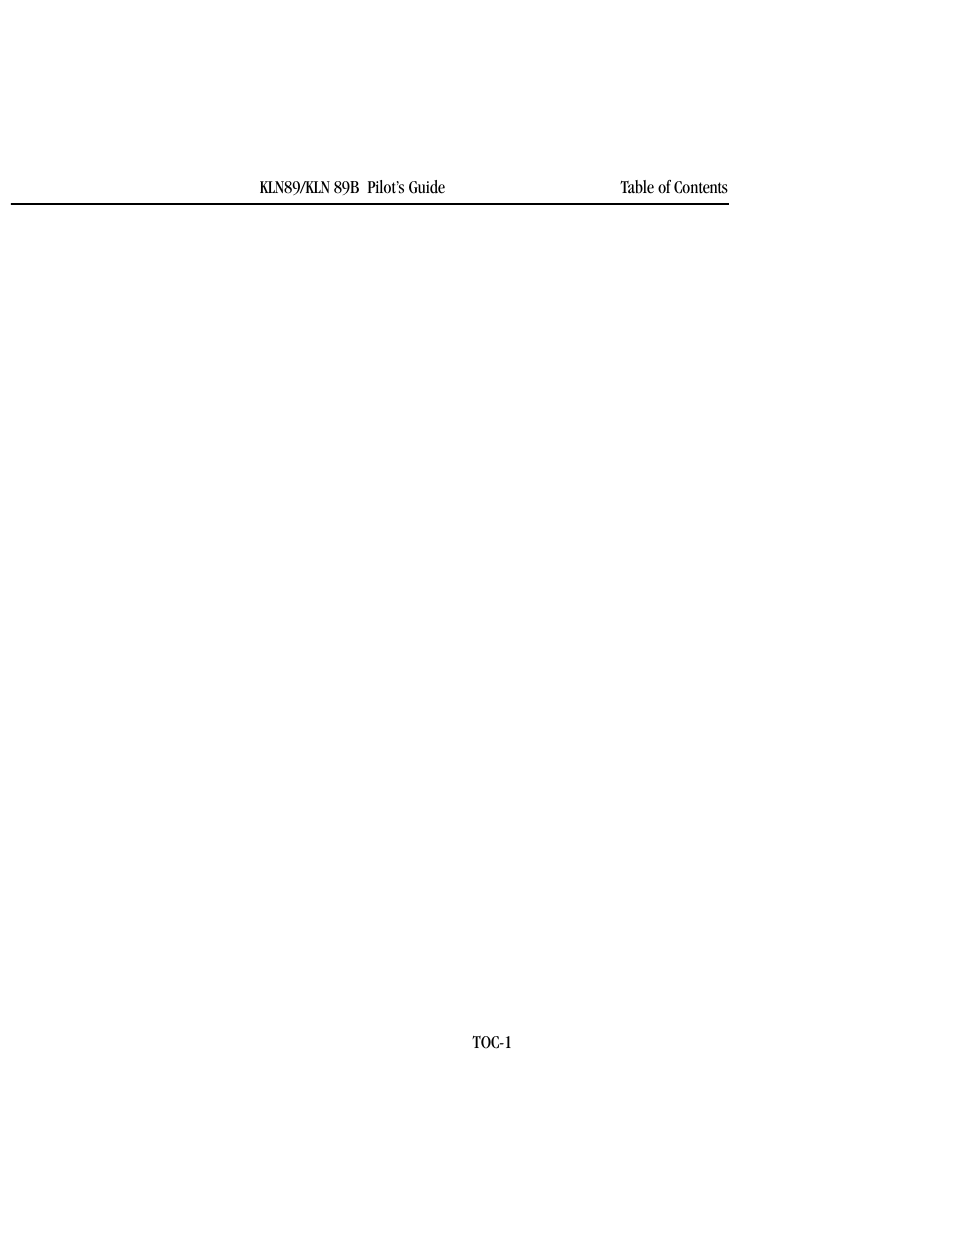 BendixKing KLN 89B - Pilots Guide User Manual | Page 9 / 246